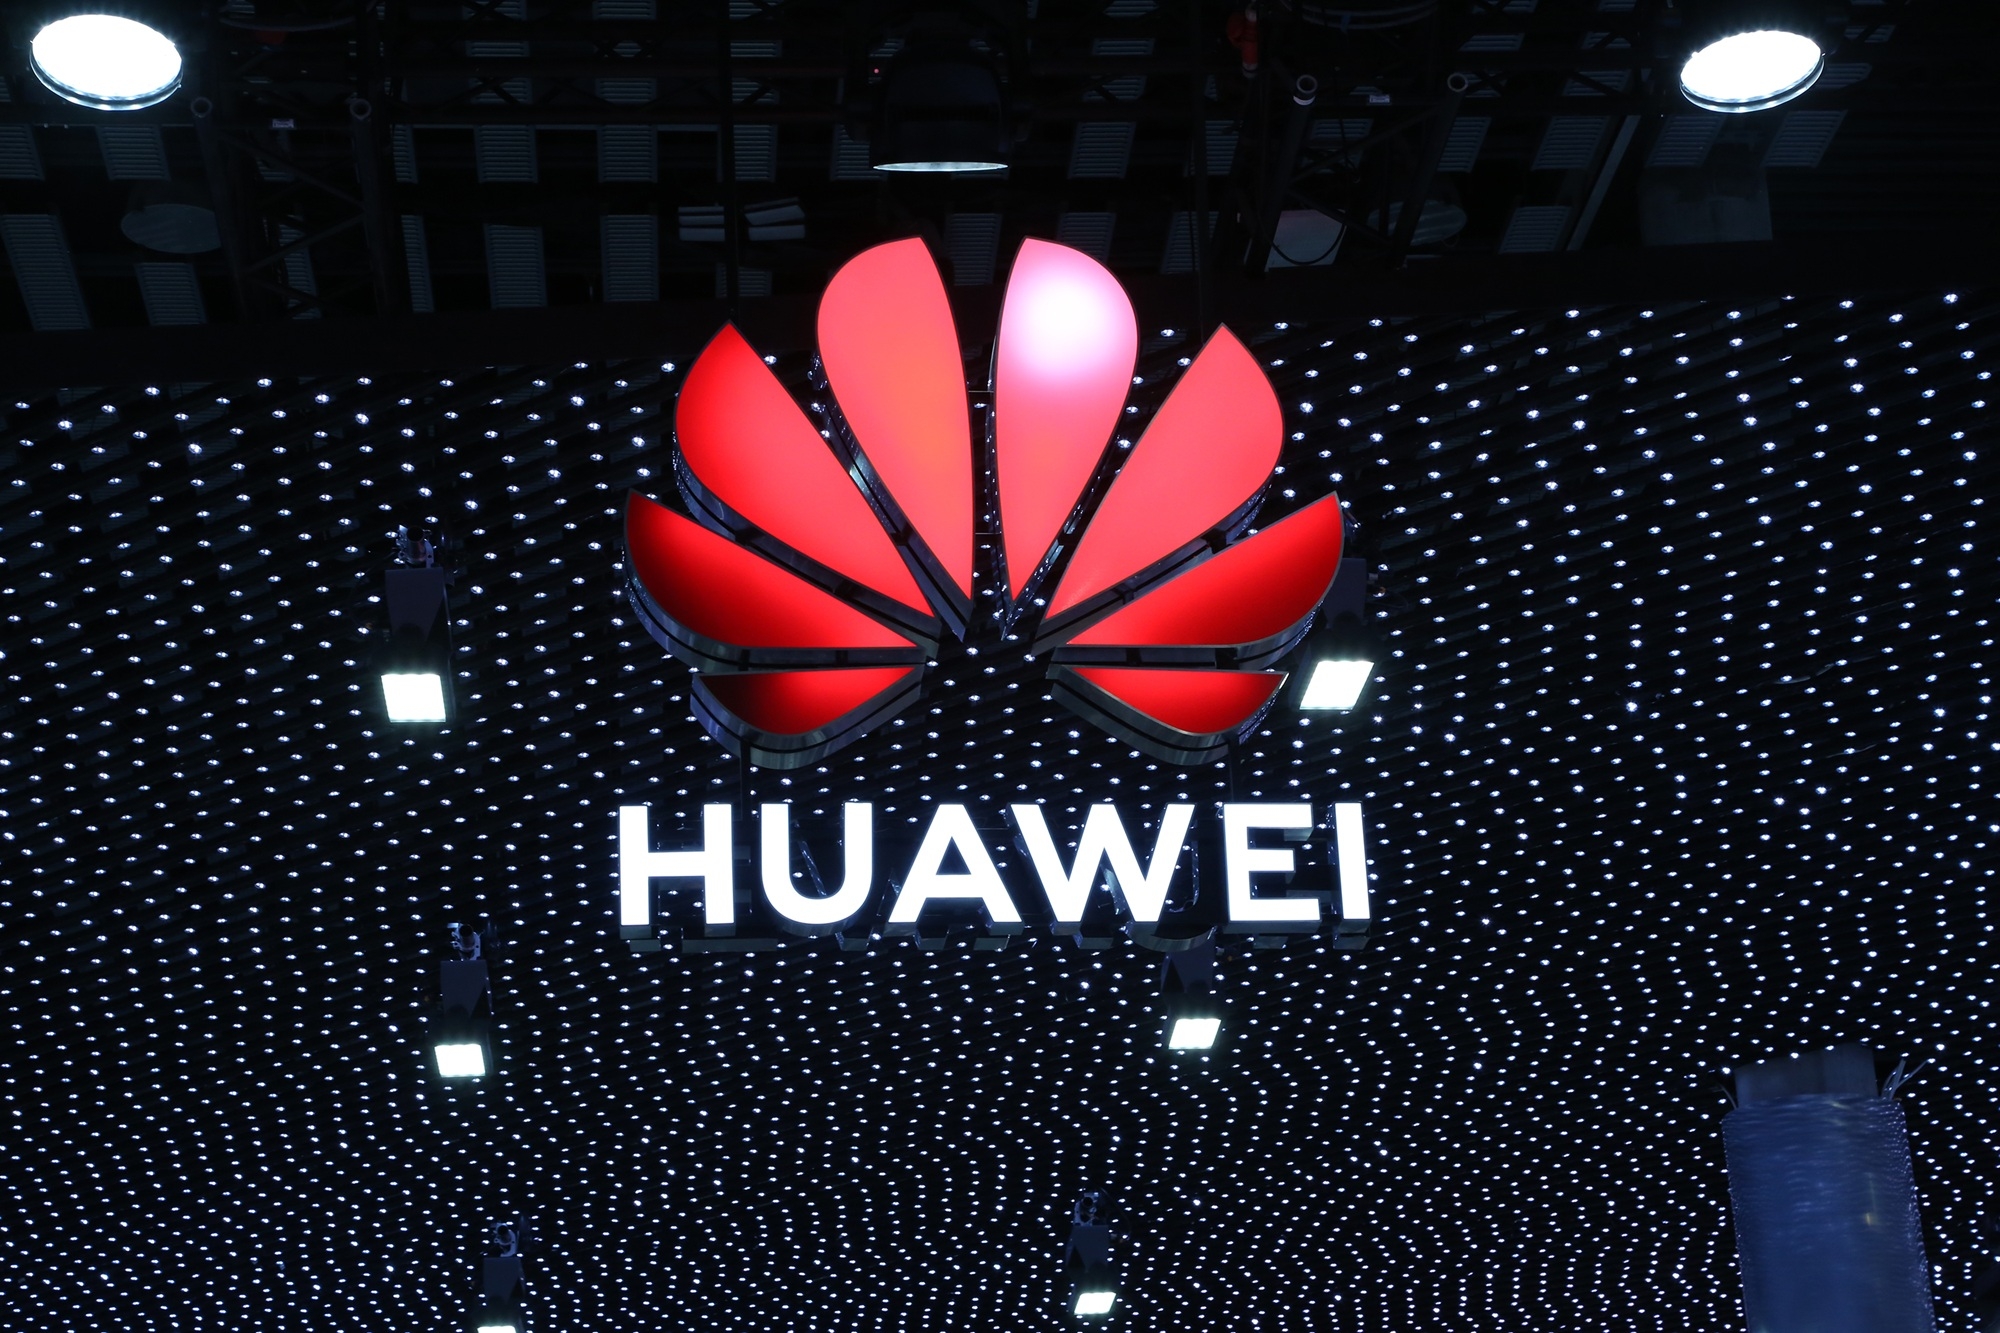 Receita da Huawei cresce 23% no semestre apesar de sanções dos EUA